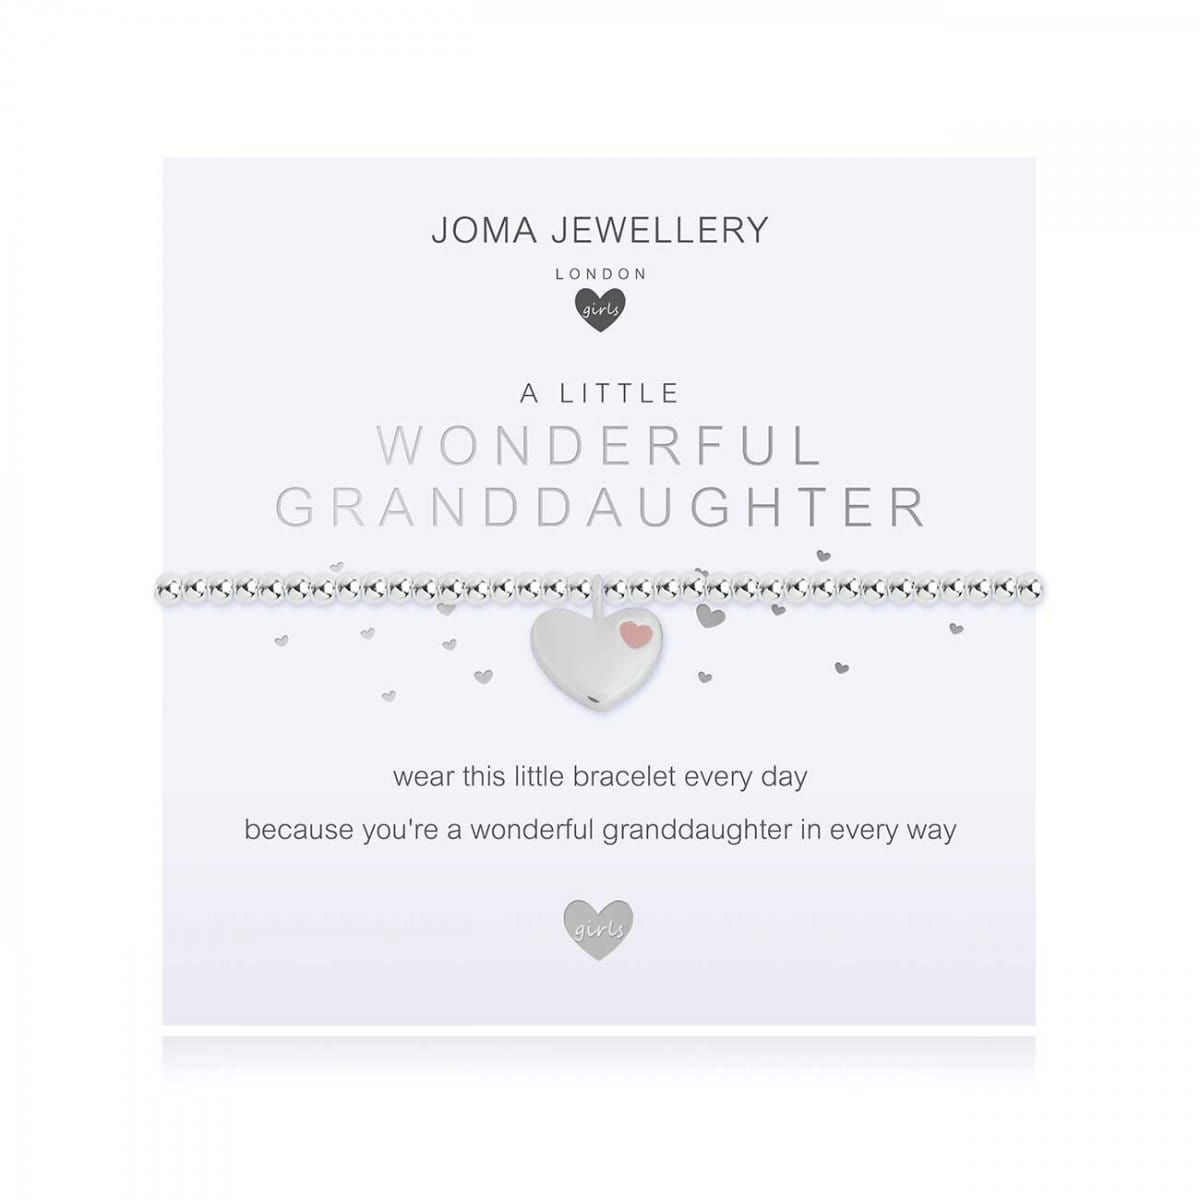 Joma Jewellery Childrens Bracelet Joma Jewellery Childrens Bracelet - A little Wonderful Granddaughter